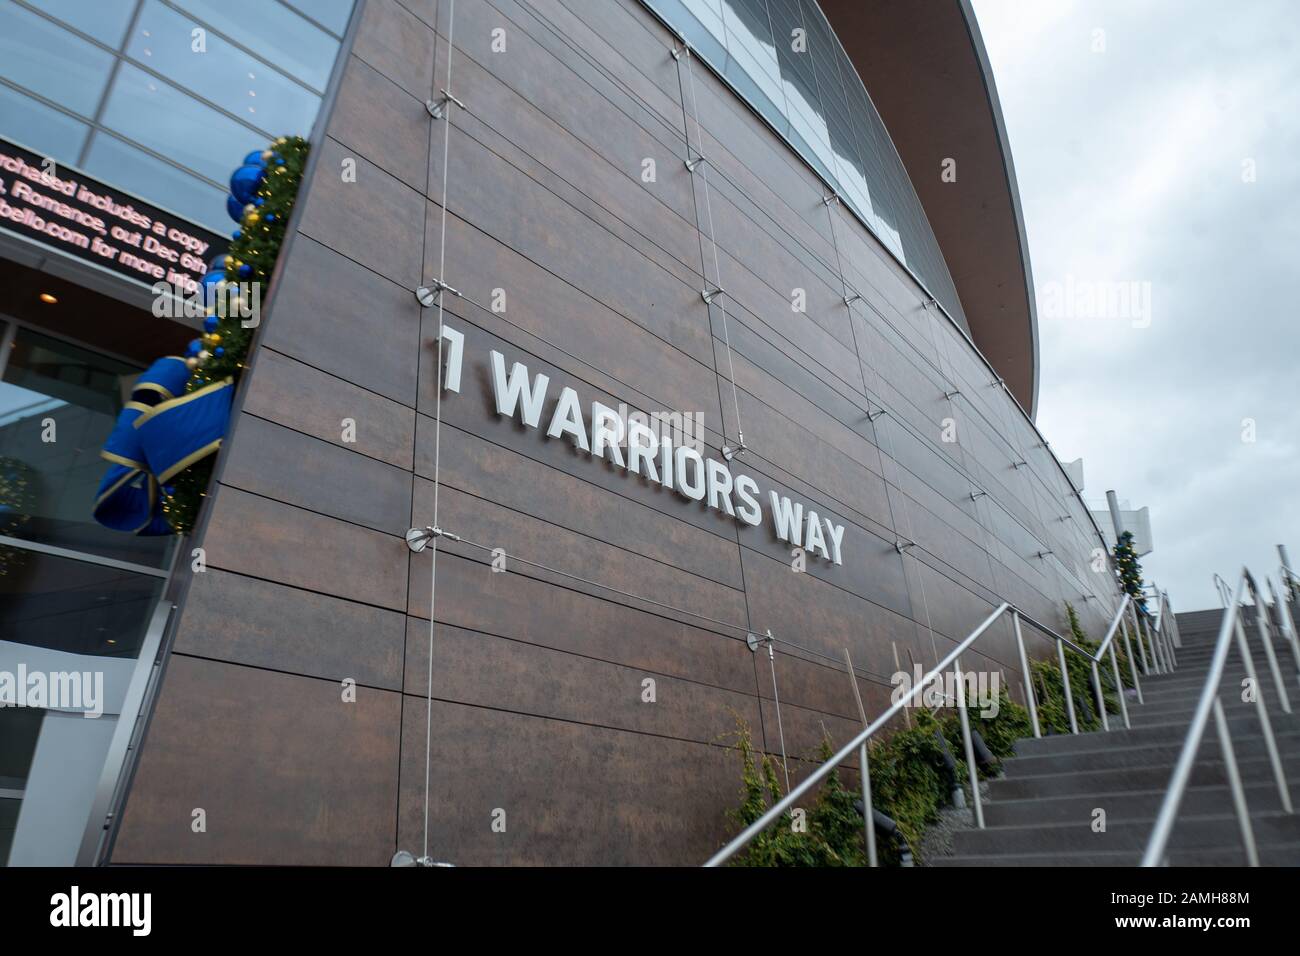 Panneau de signalisation pour 1 Warriors Way au Chase Center, la nouvelle maison de l'équipe de basket-ball des Golden State Warriors NBA dans le quartier de Mission Bay à San Francisco, Californie, 5 décembre 2019. () Banque D'Images